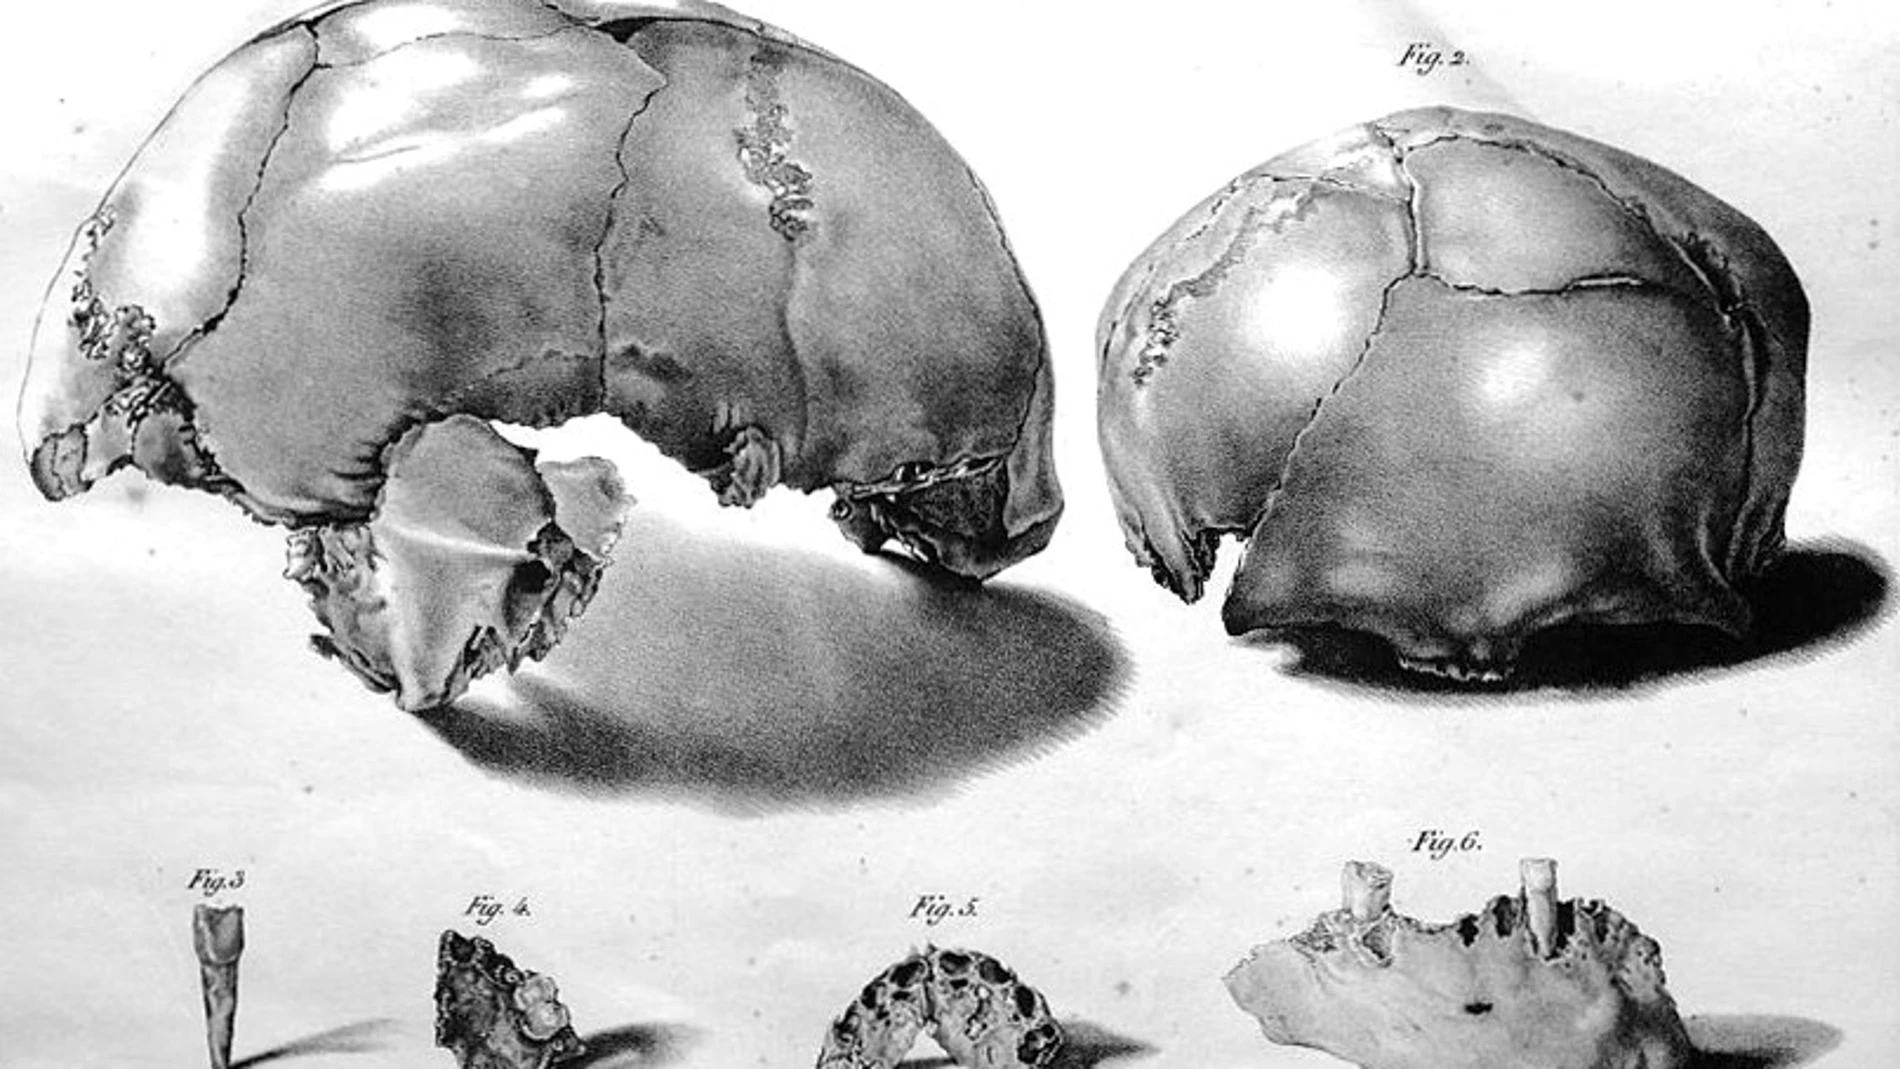 Dibujos del cráneo de Engis 2 encontrado en 1829